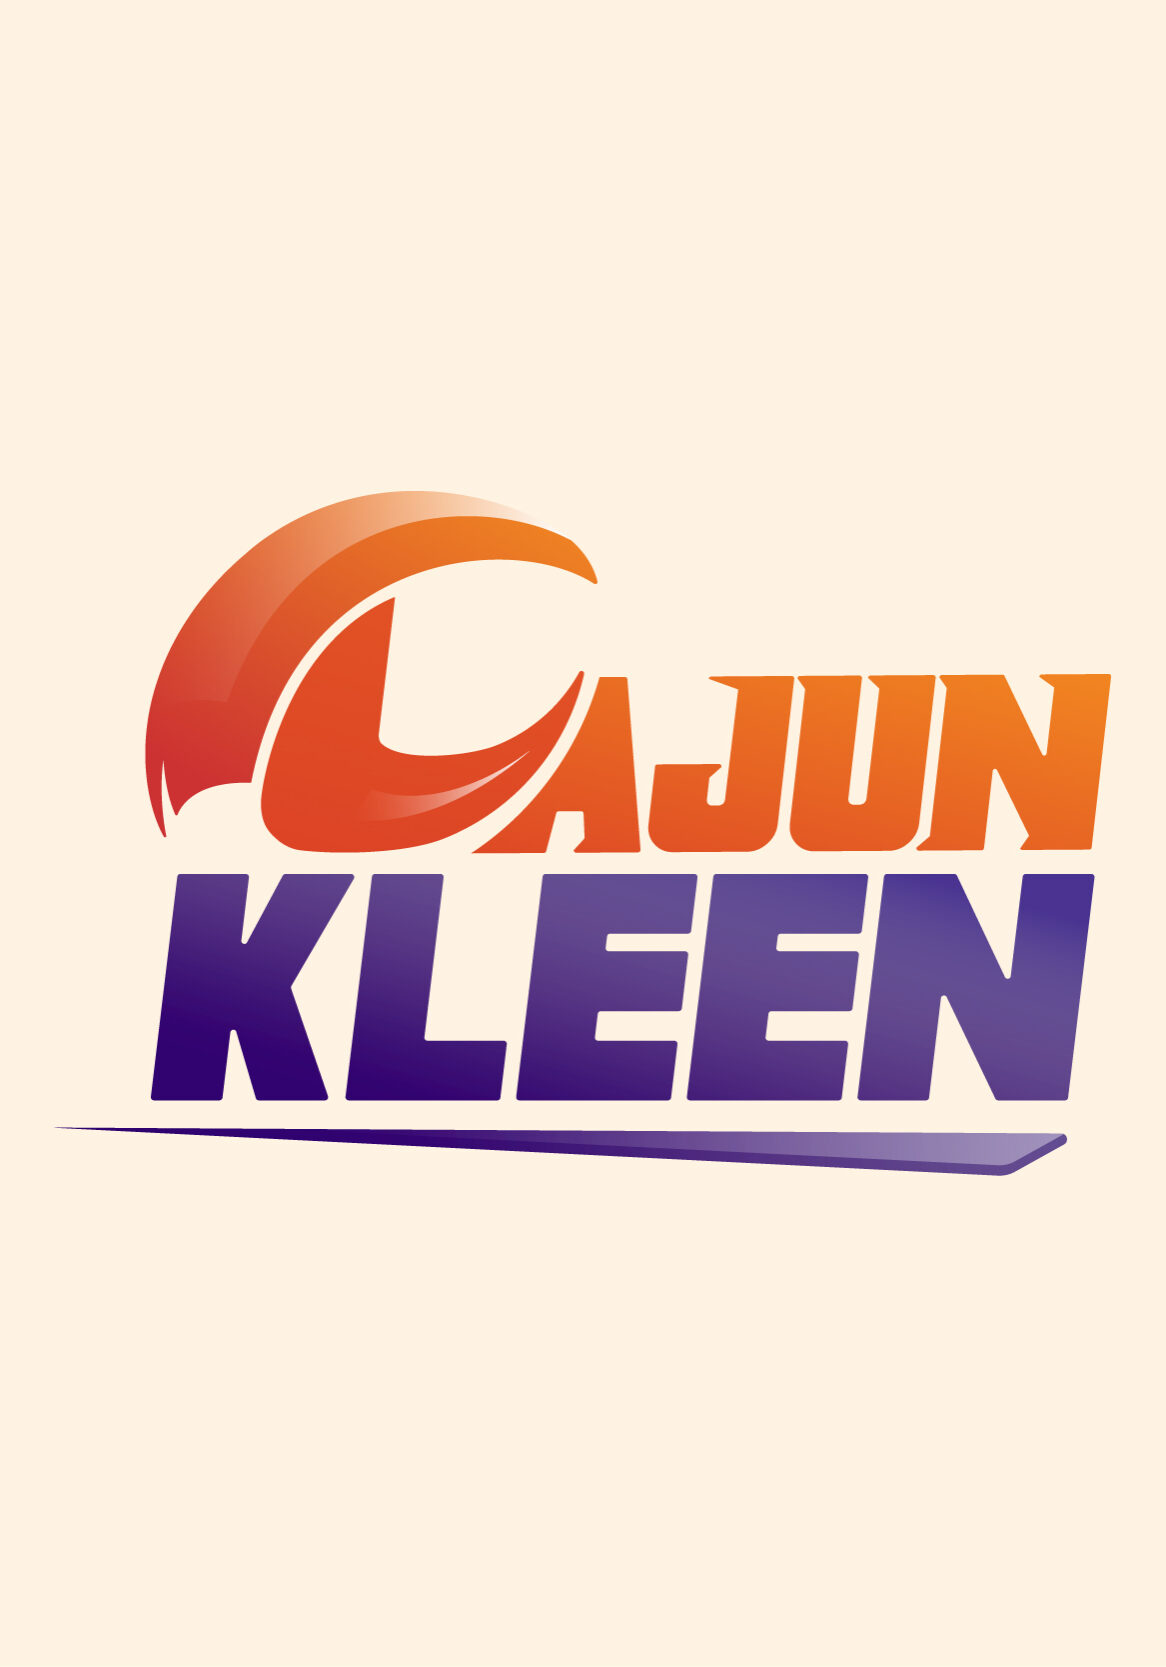 Cajun Kleen | SnapMe Creative